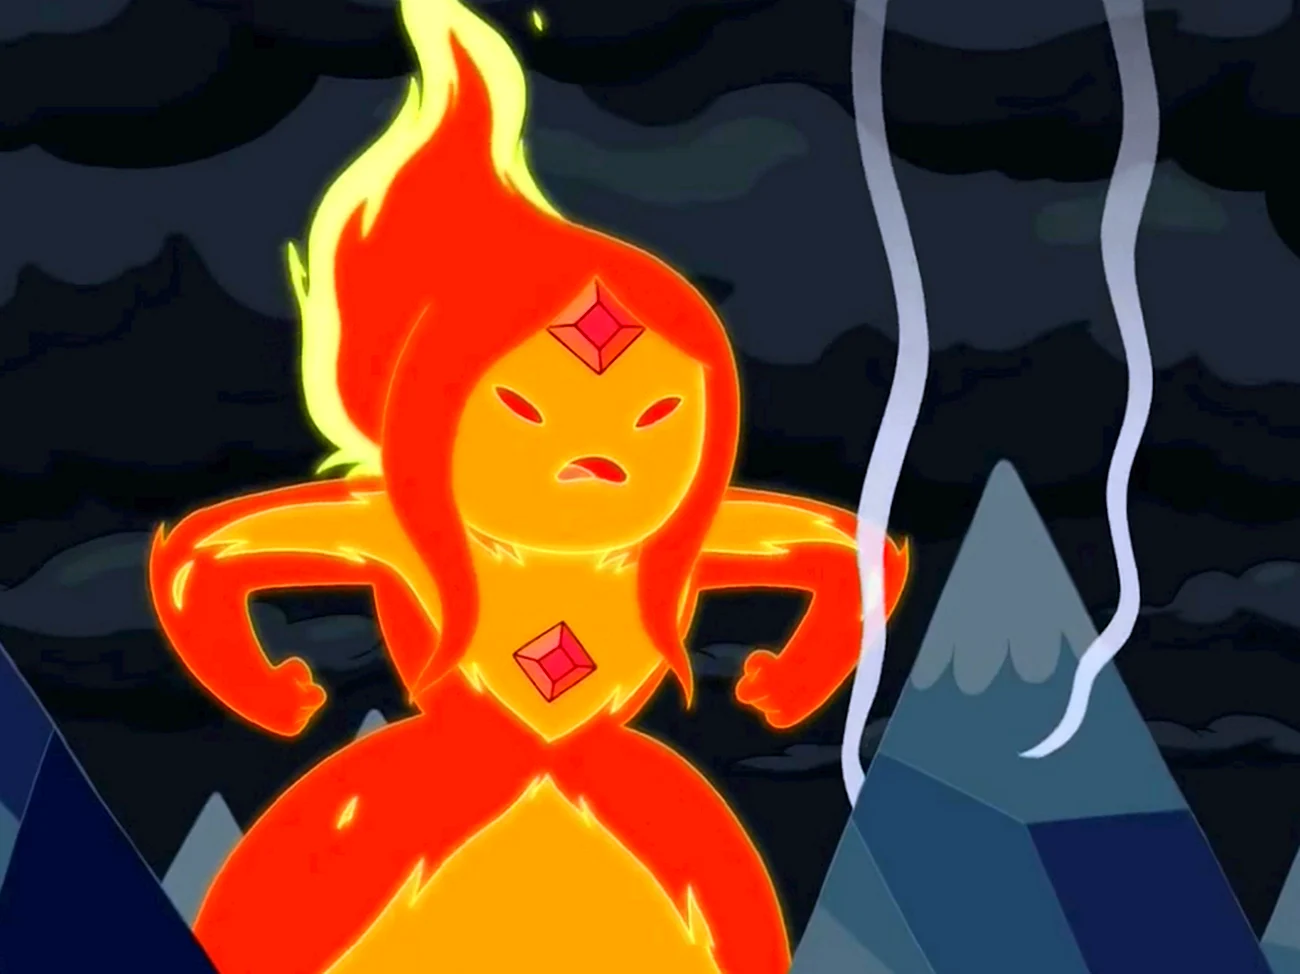 Adventure time принцесса пламя. Картинка из мультфильма